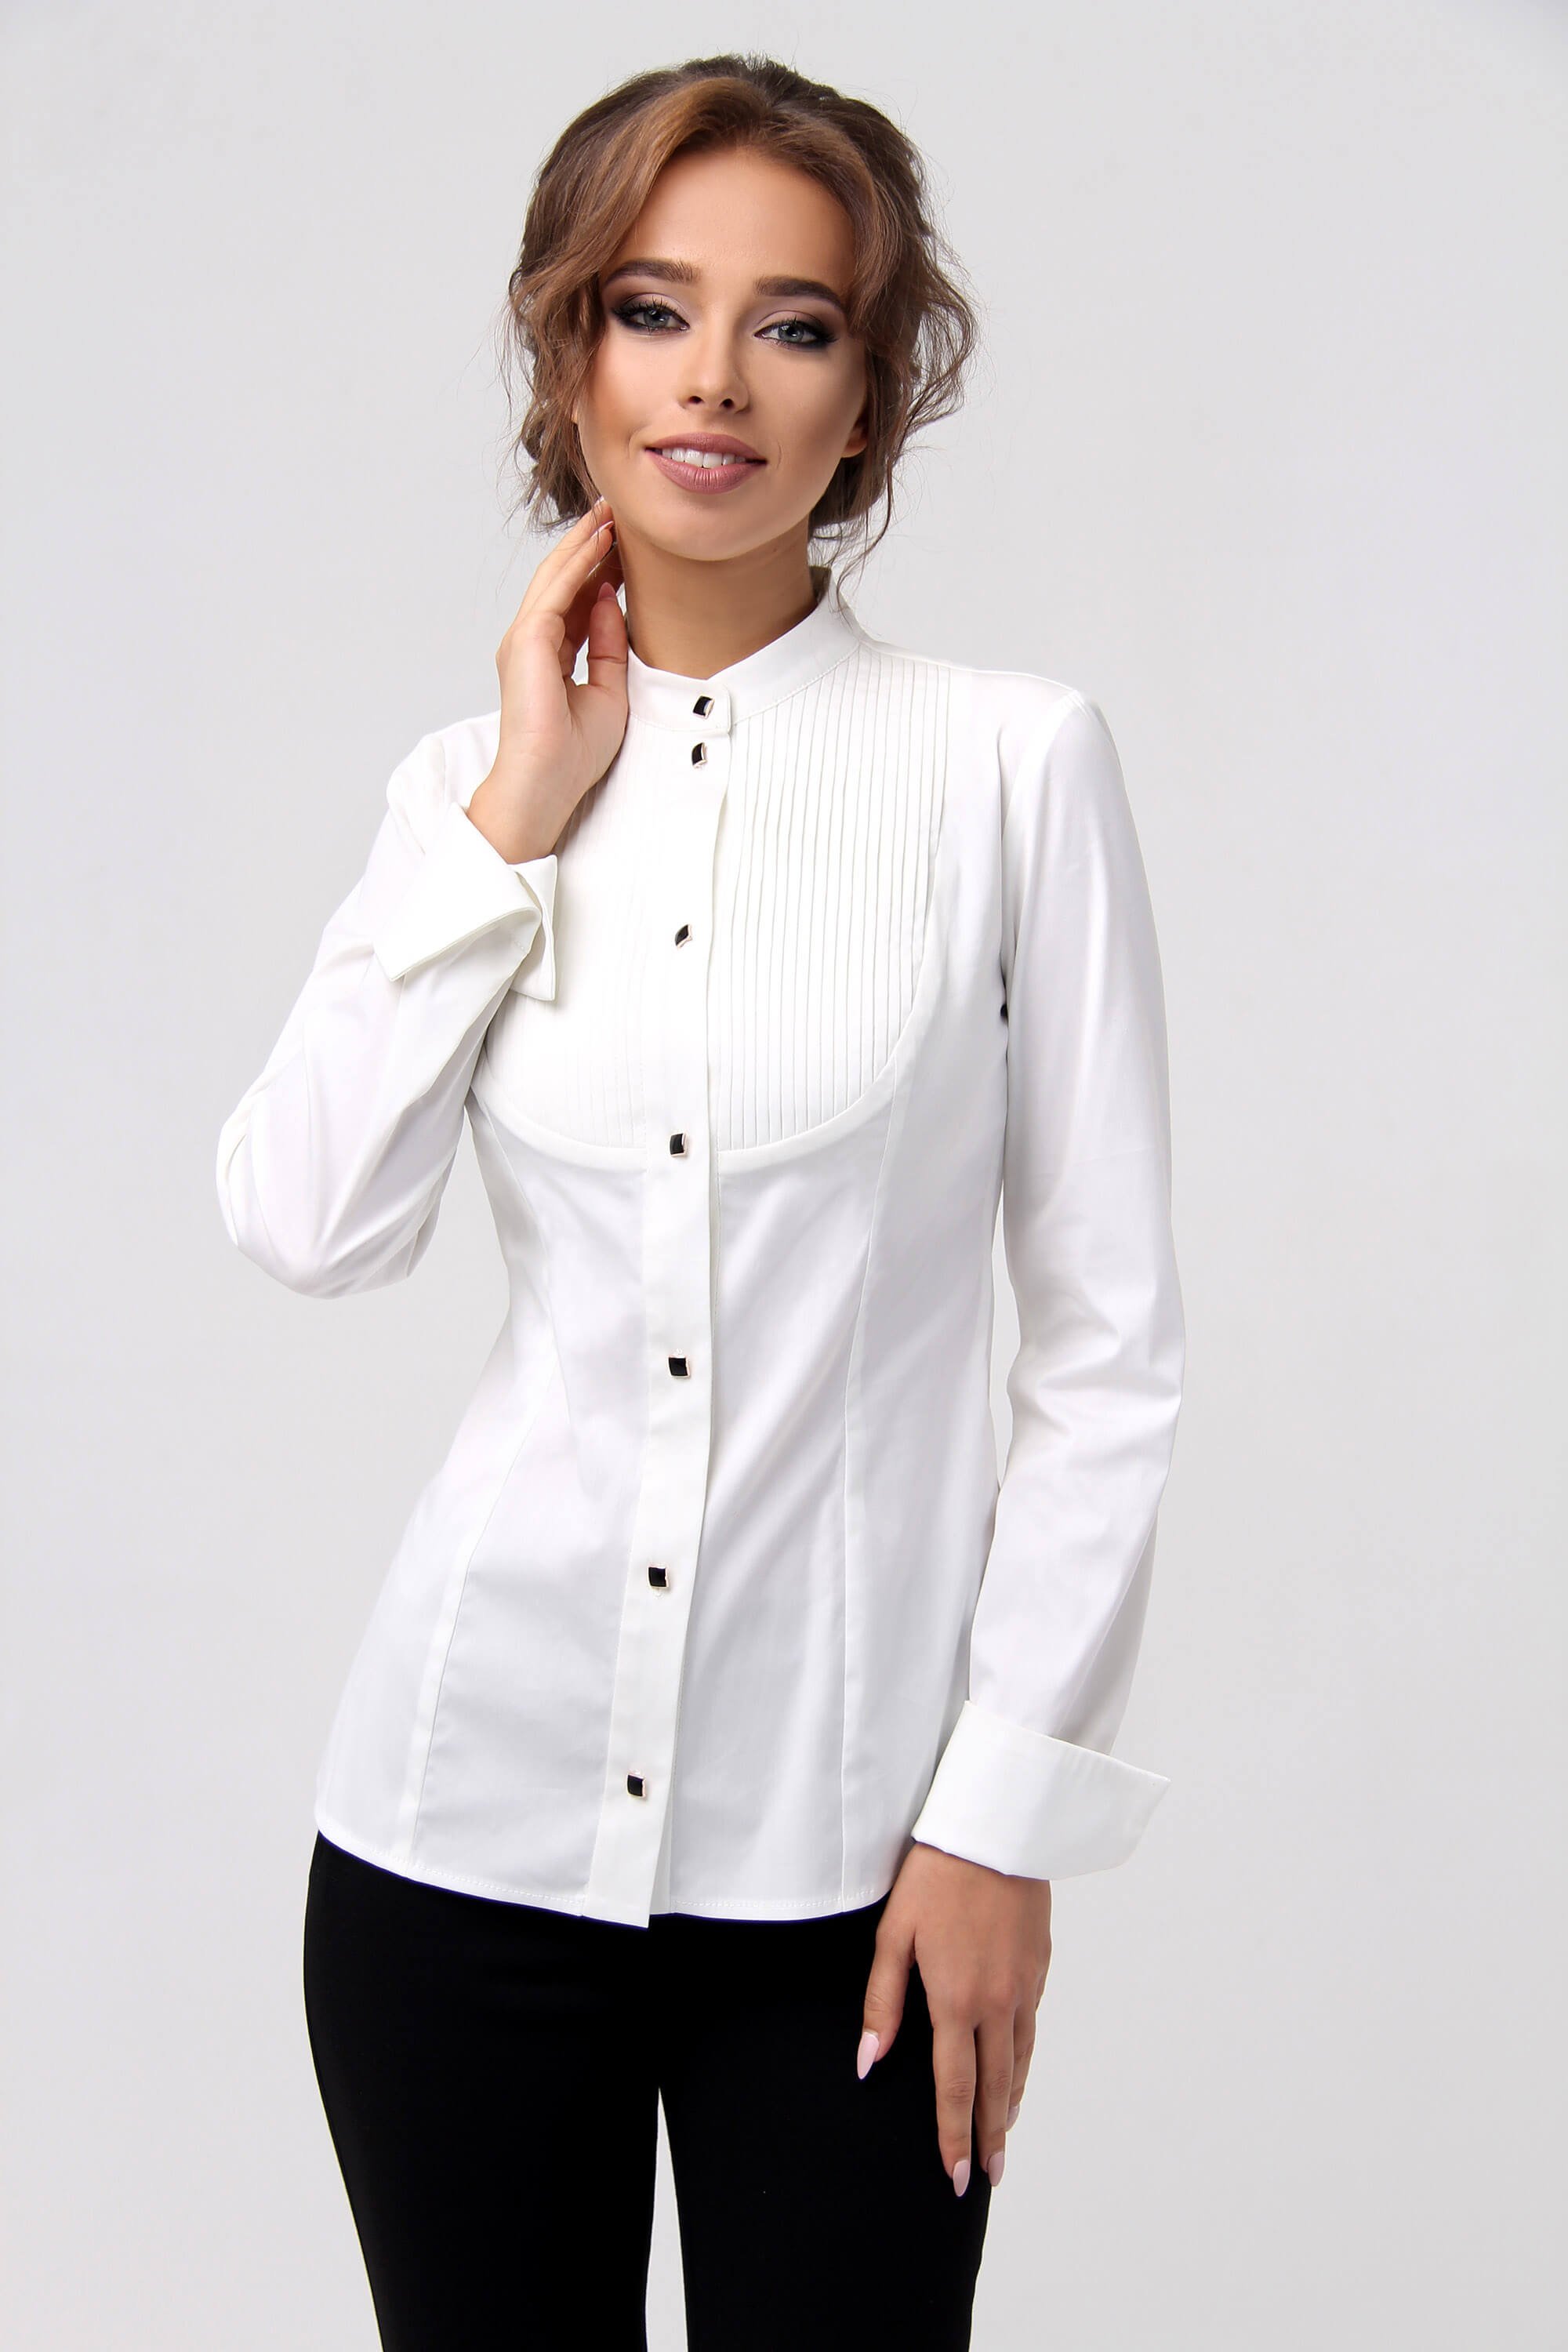 Озон белая блузка. Валберис блузки женские белые. Рубашка женская. Красивые рубашки женские. Белая блузка с воротником стойка.